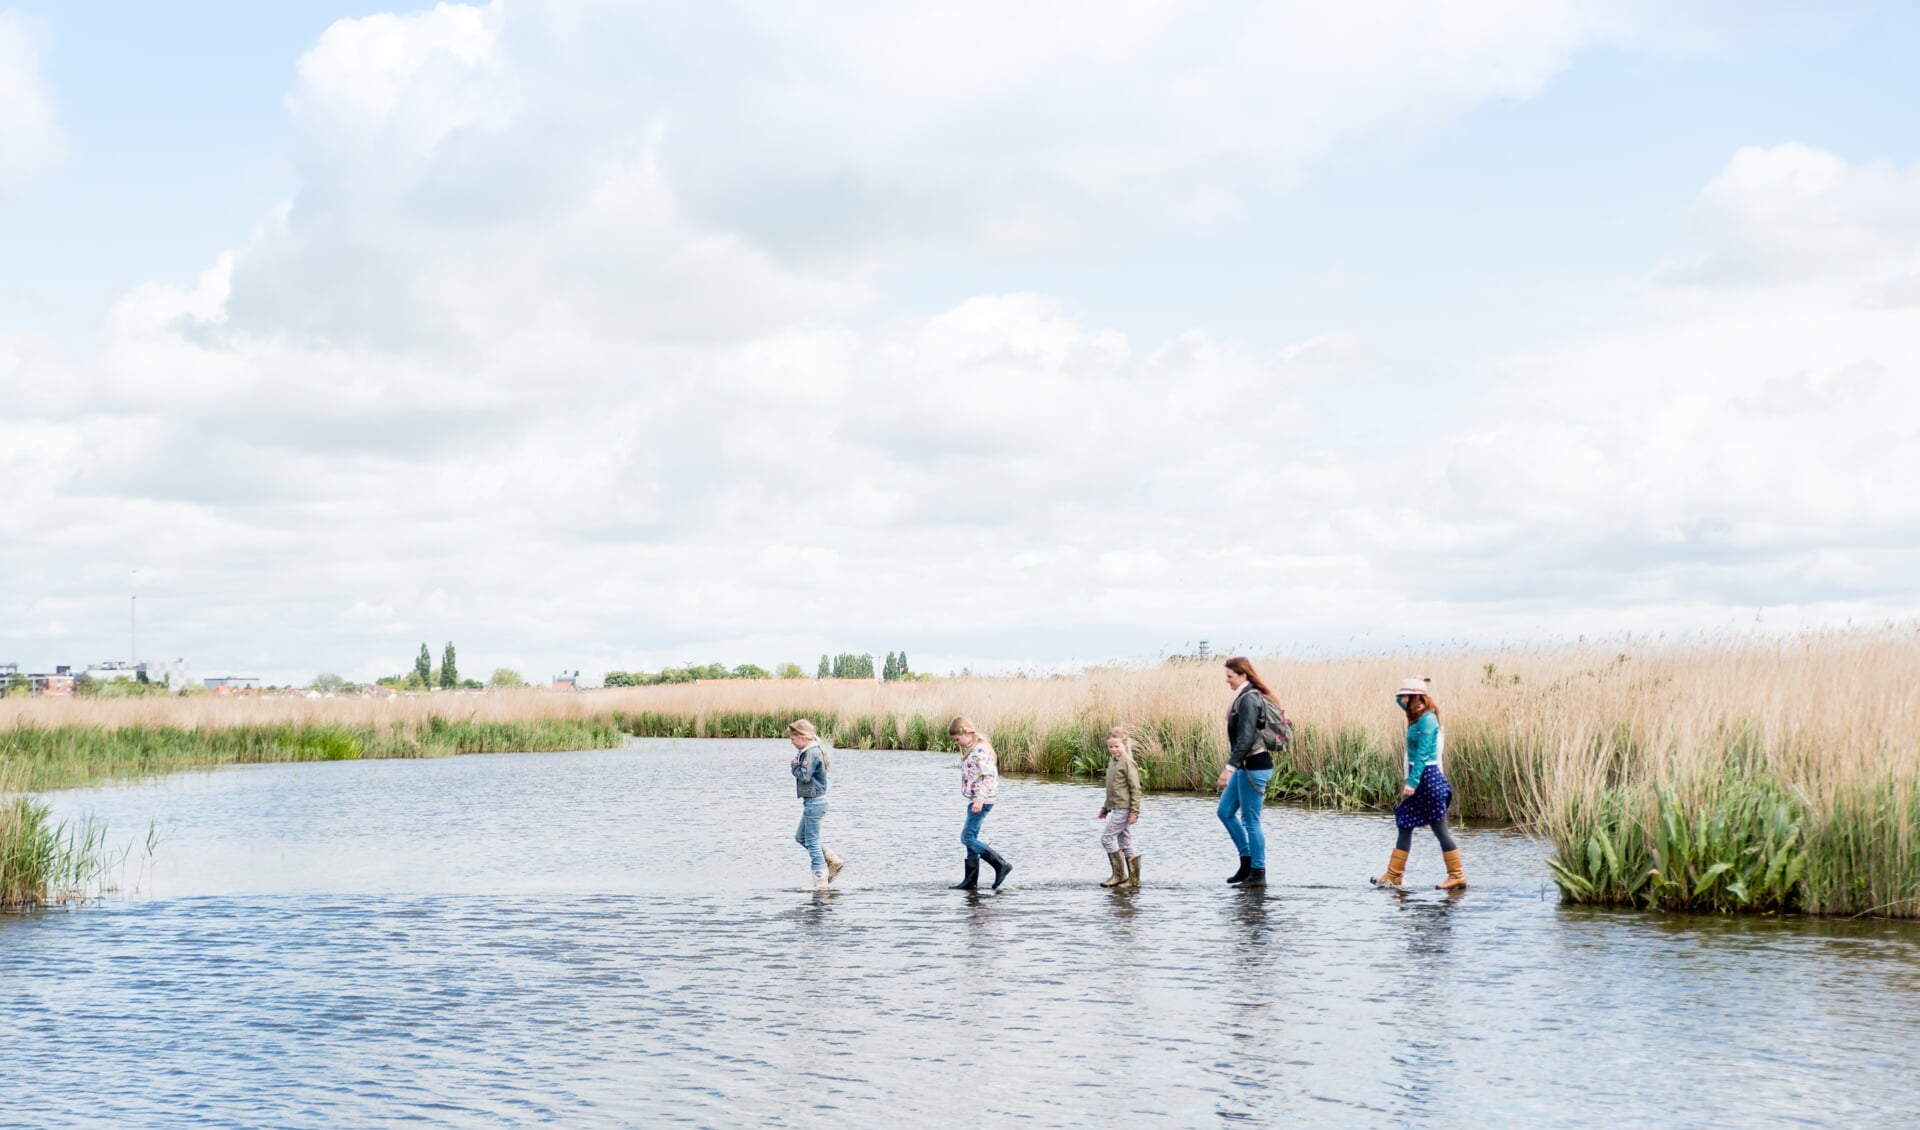 Met Pinksteren, op 28 en 29 mei, kun je weer ‘Wandelen over water’ in het Guisveld.